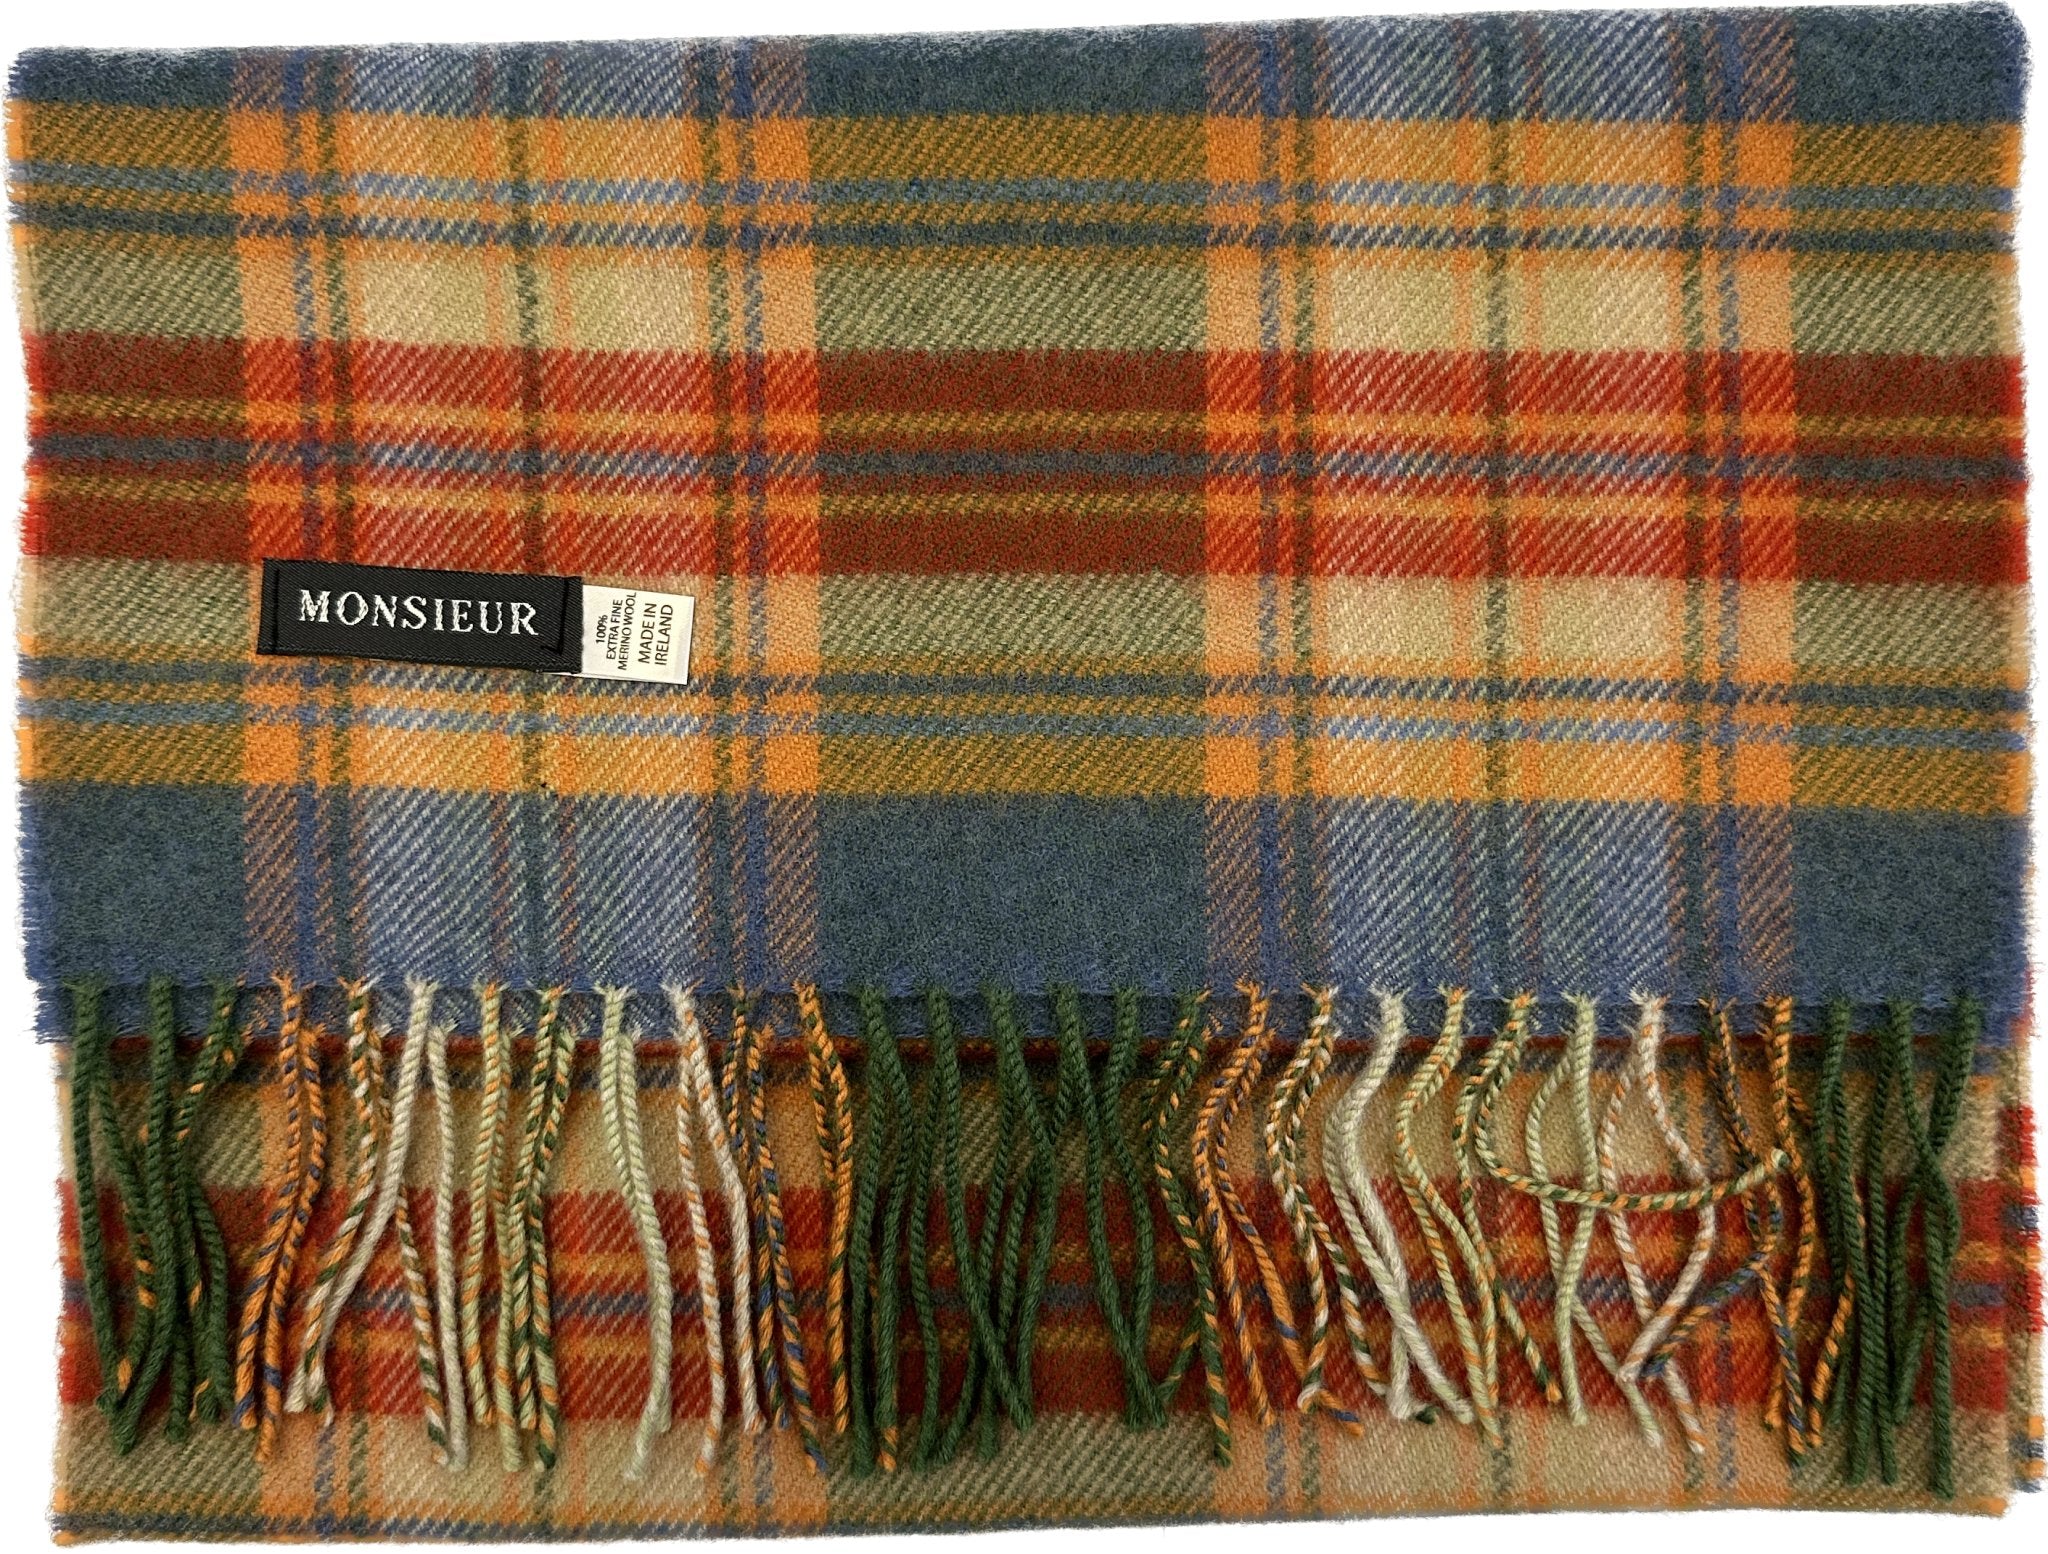 Sciarpa check luxury wool gialla arancione verde Monsieur - MONSIEUR